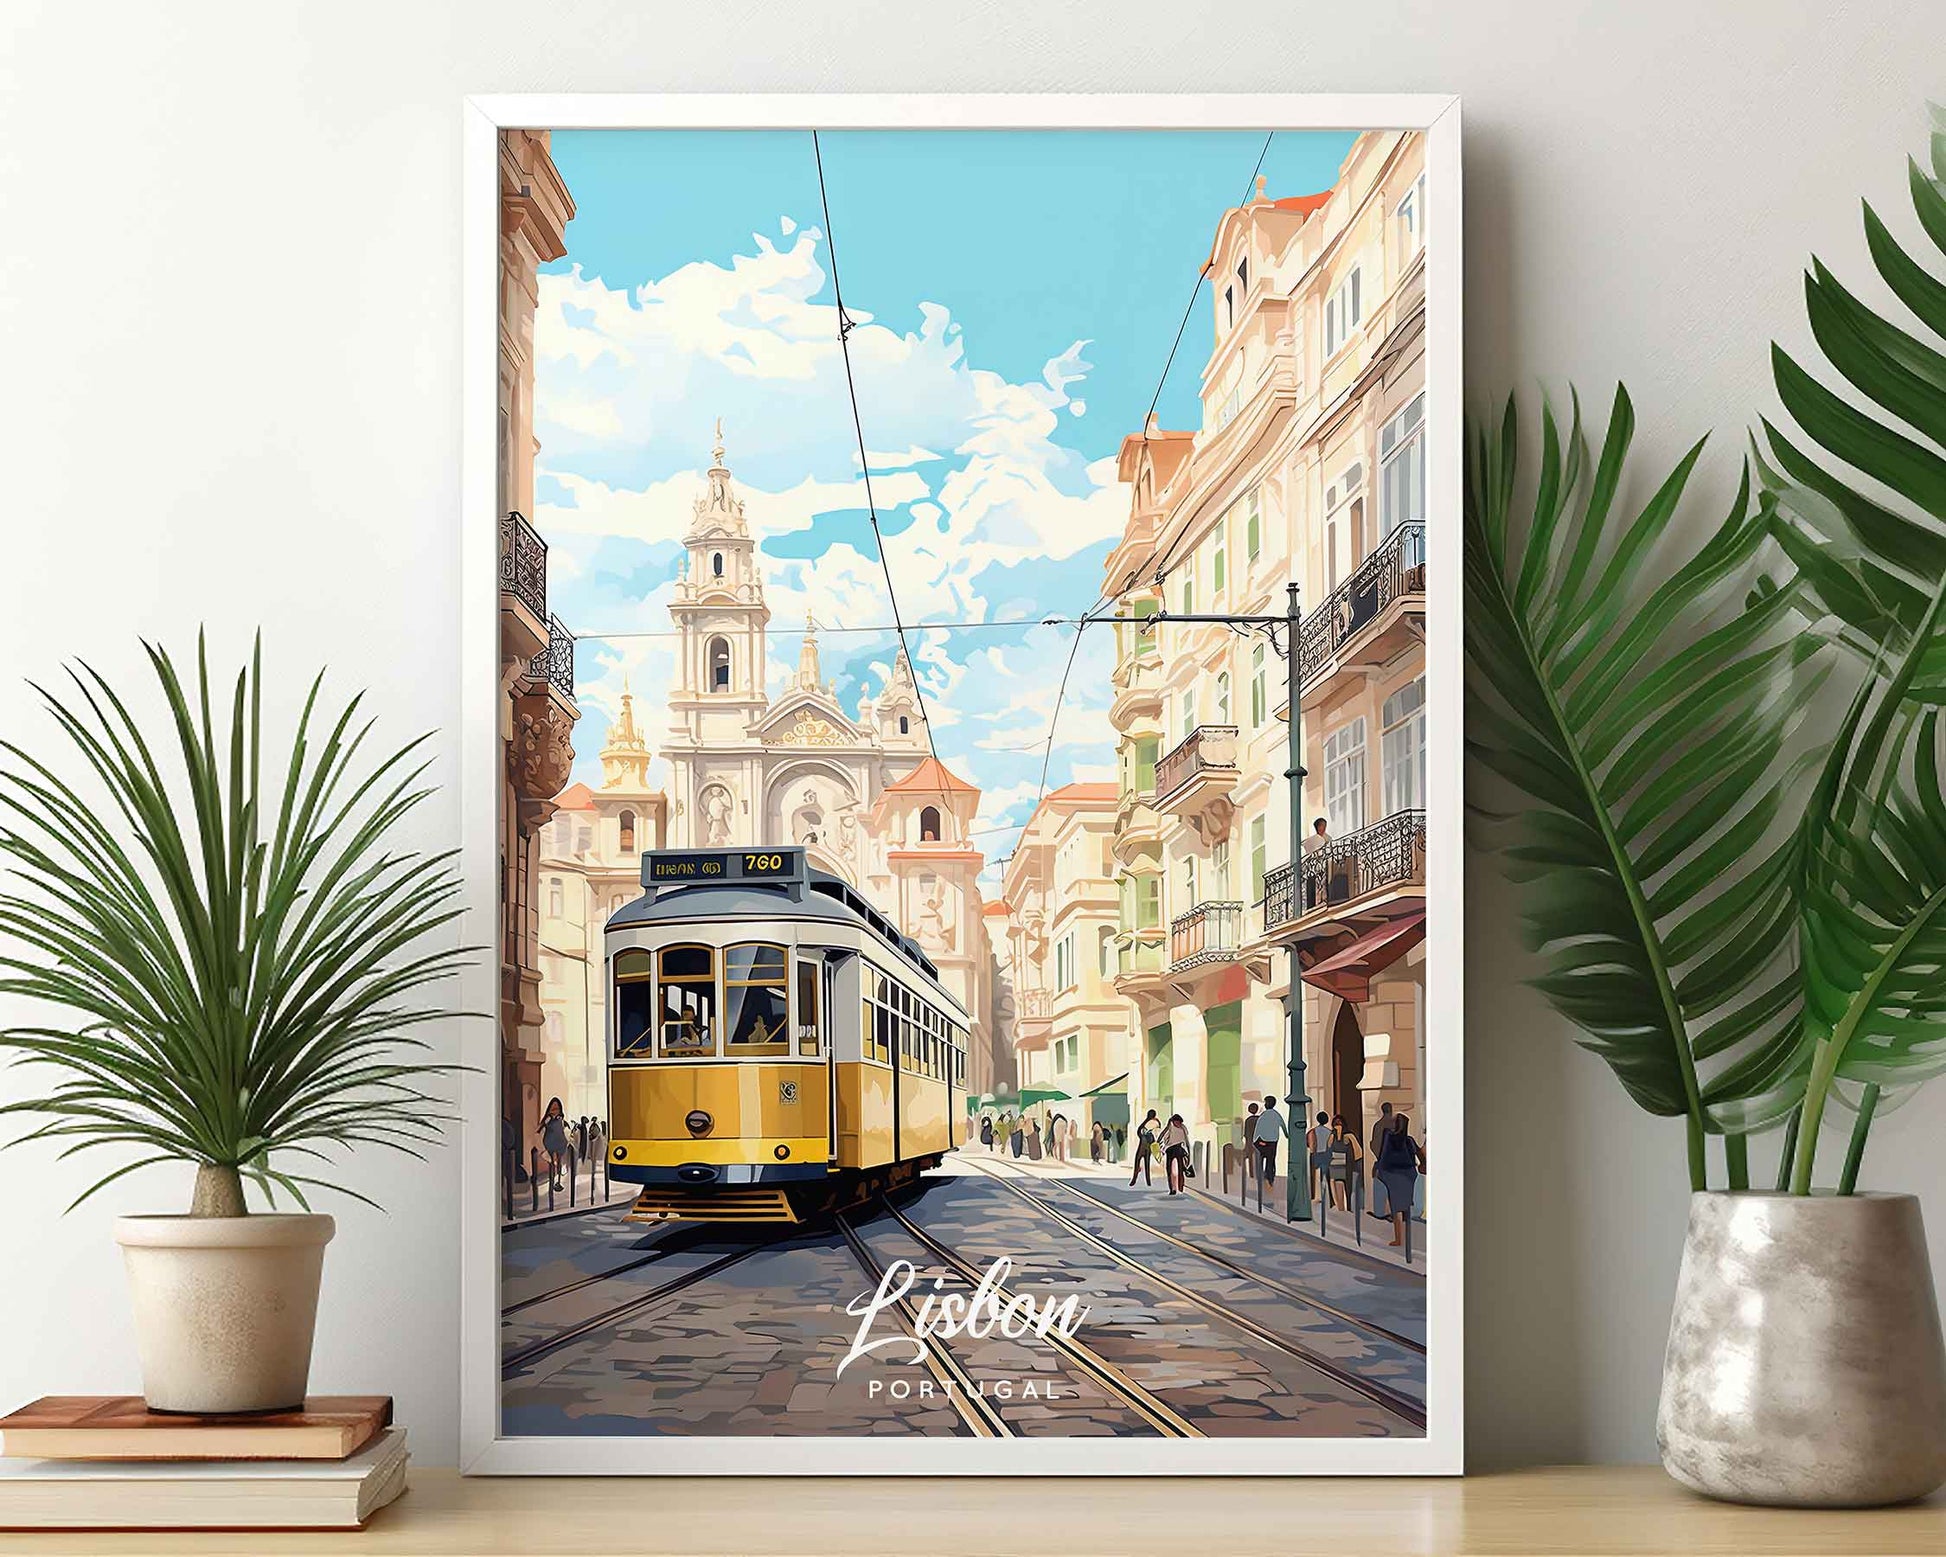 Framed Image of Lisbon Portugal Travel Poster Prints Illustration Wall Art